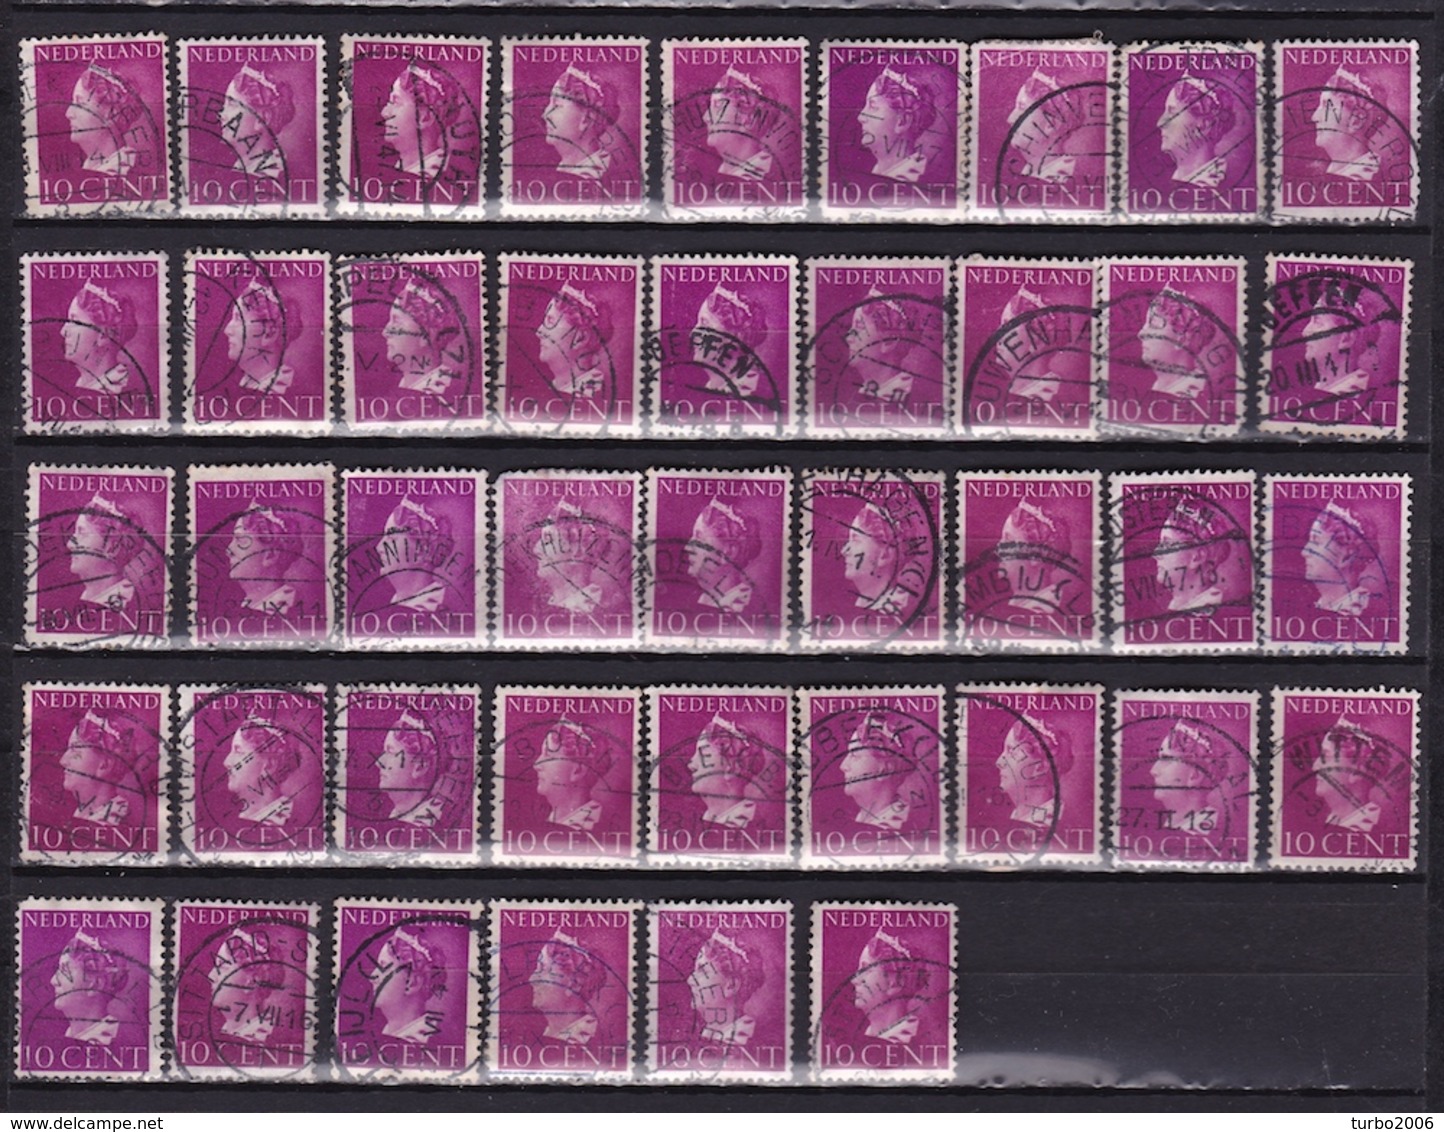 Nog Uit Te Zoeken STEMPELS Op 1940-47 Koningin Wilhelmina 10 Cent Violet NVPH 335 (42 X) Zie Scan ! - Poststempels/ Marcofilie